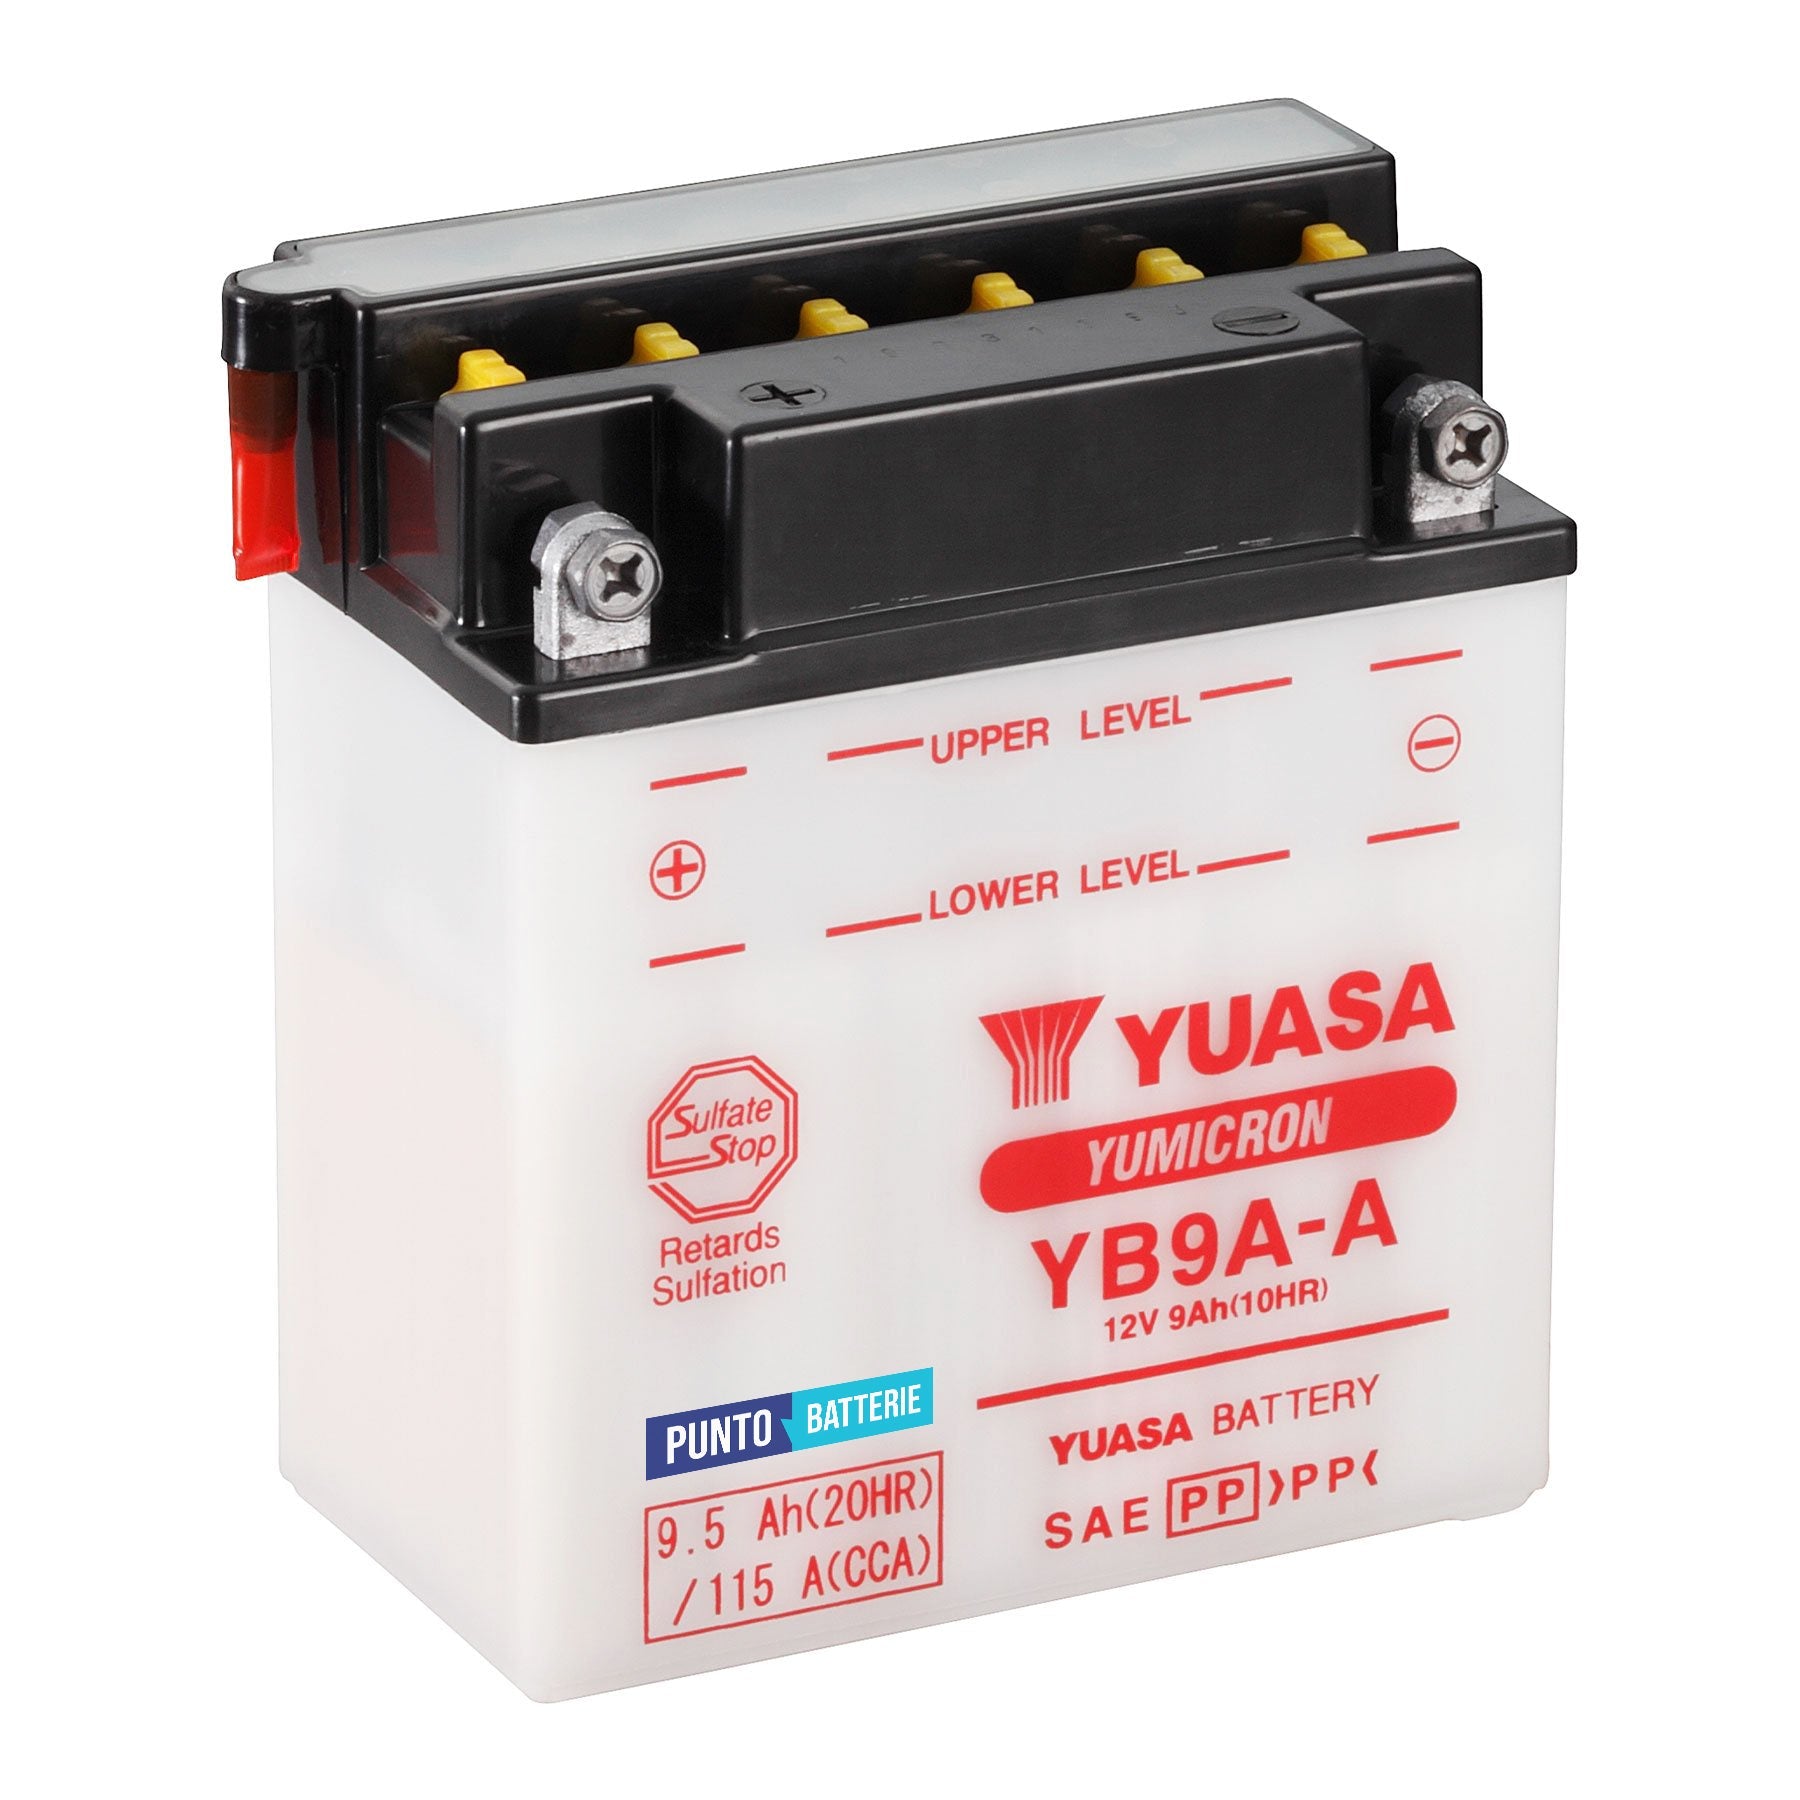 Batteria originale Yuasa YuMicron YB9A-A, dimensioni 135 x 75 x 155, polo positivo a sinistra, 12 volt, 9 amperora, 115 ampere. Batteria per moto, scooter e powersport.